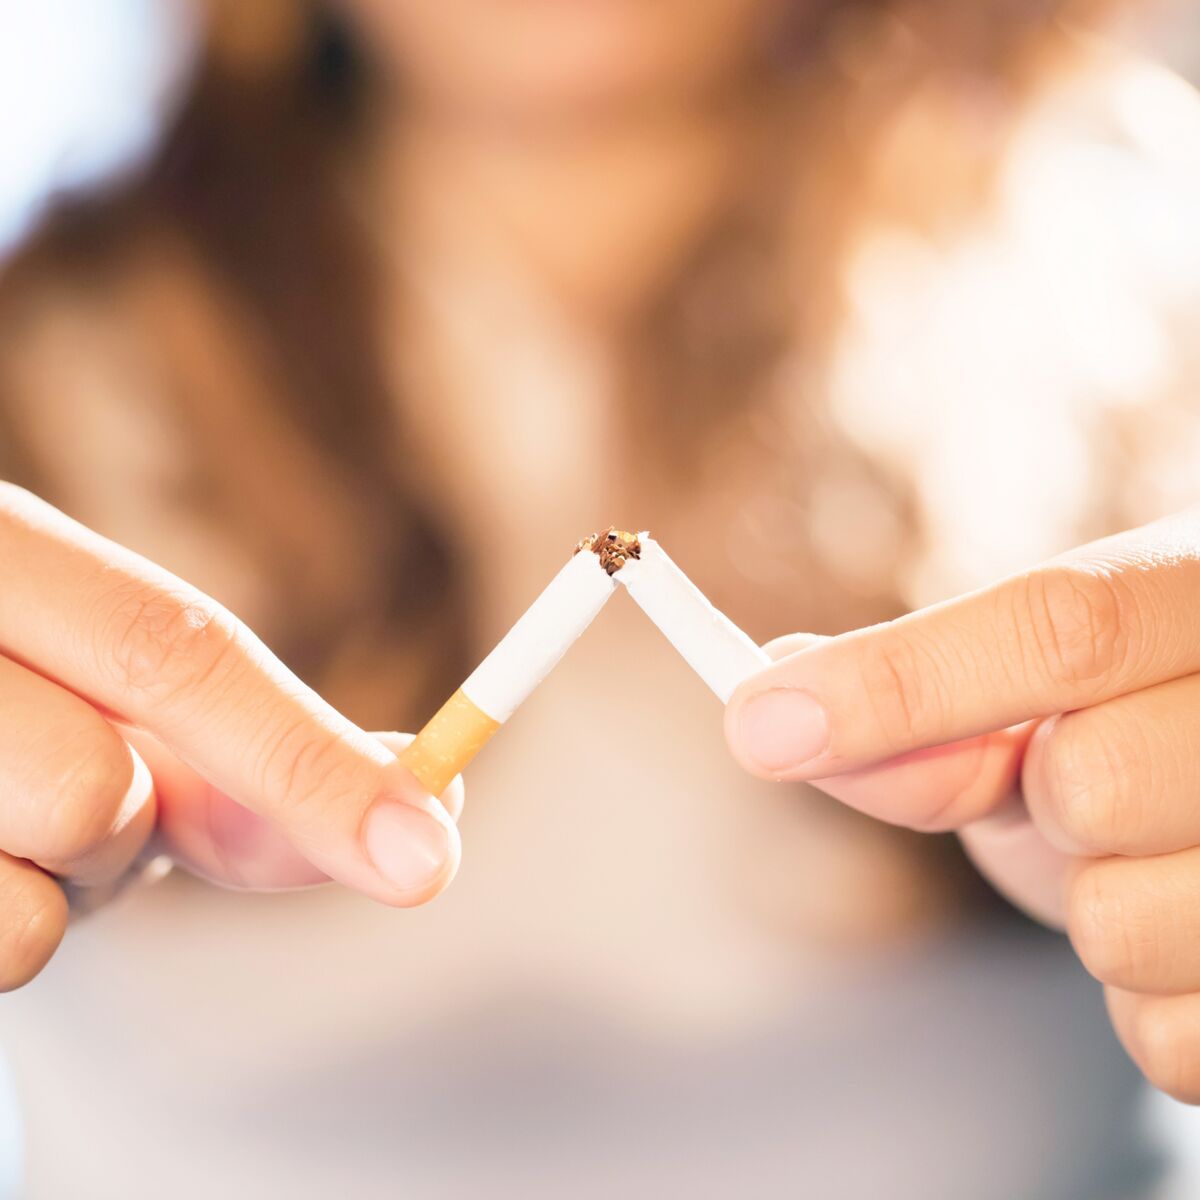 Méthodes anti-tabac : comment arrêter de fumer ?